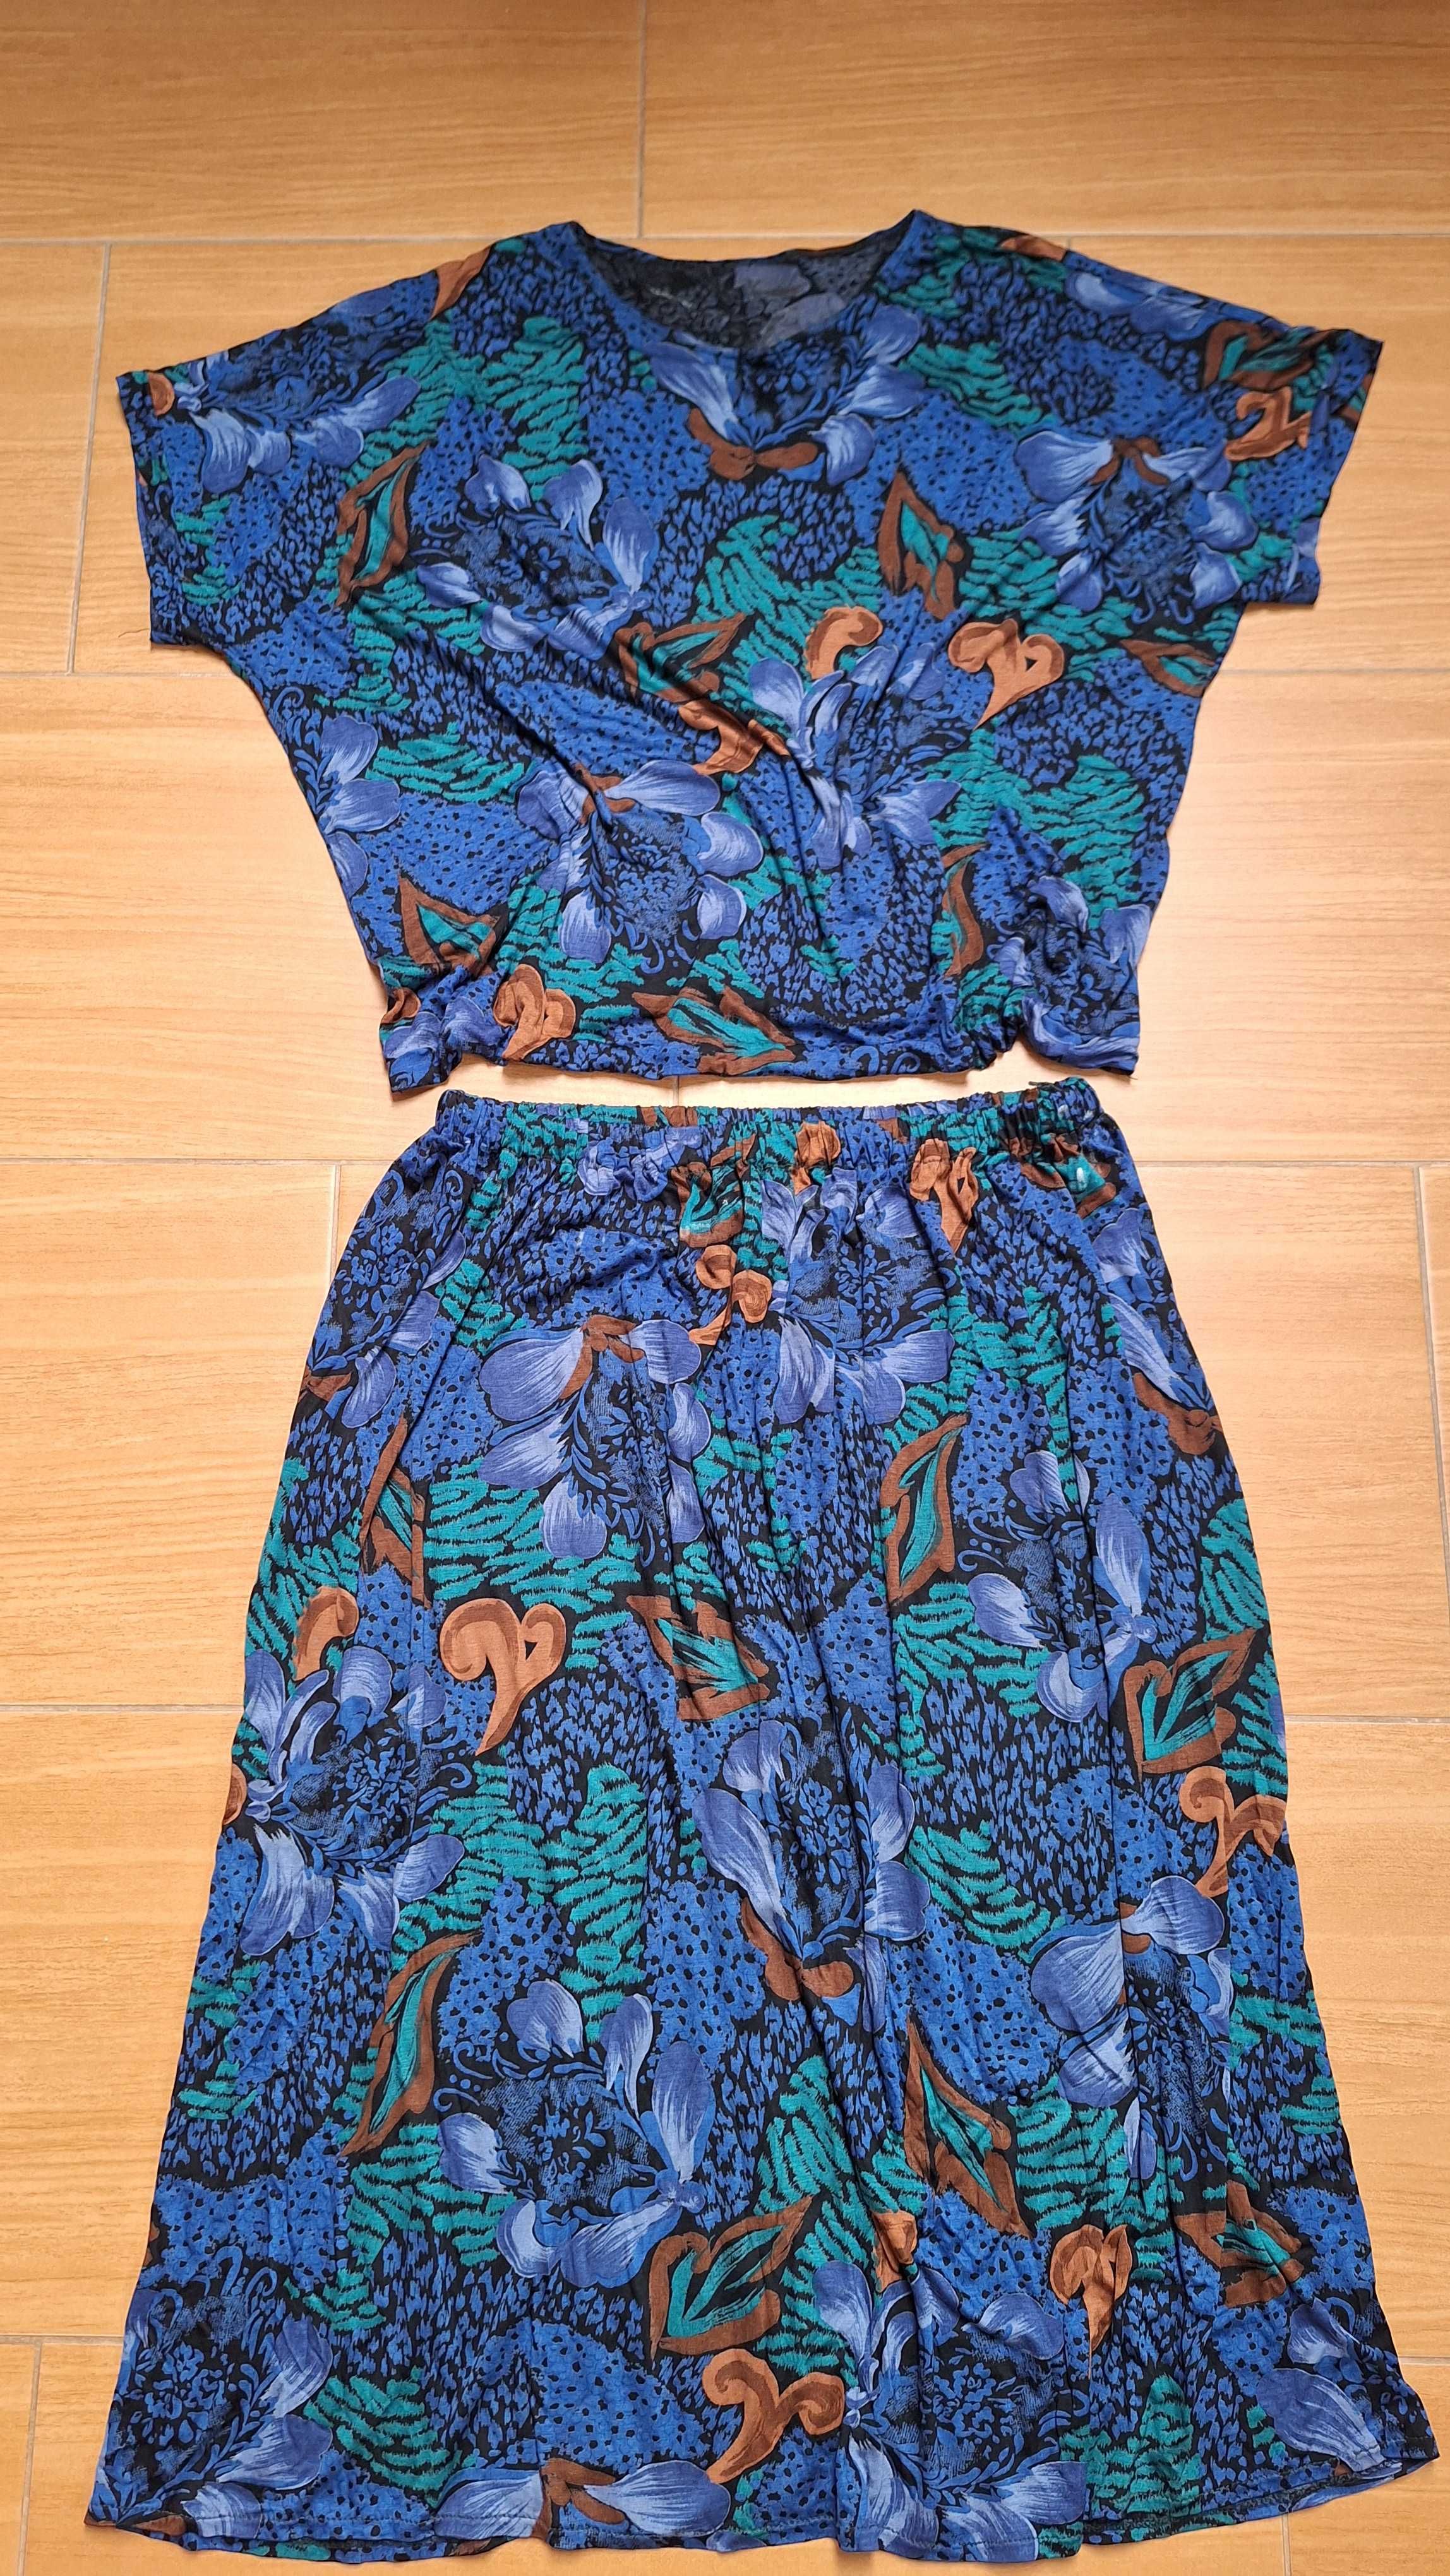 Komplet M/L/XL spódnica +bluzka,w kwiaty,żywe kolory,bawełna